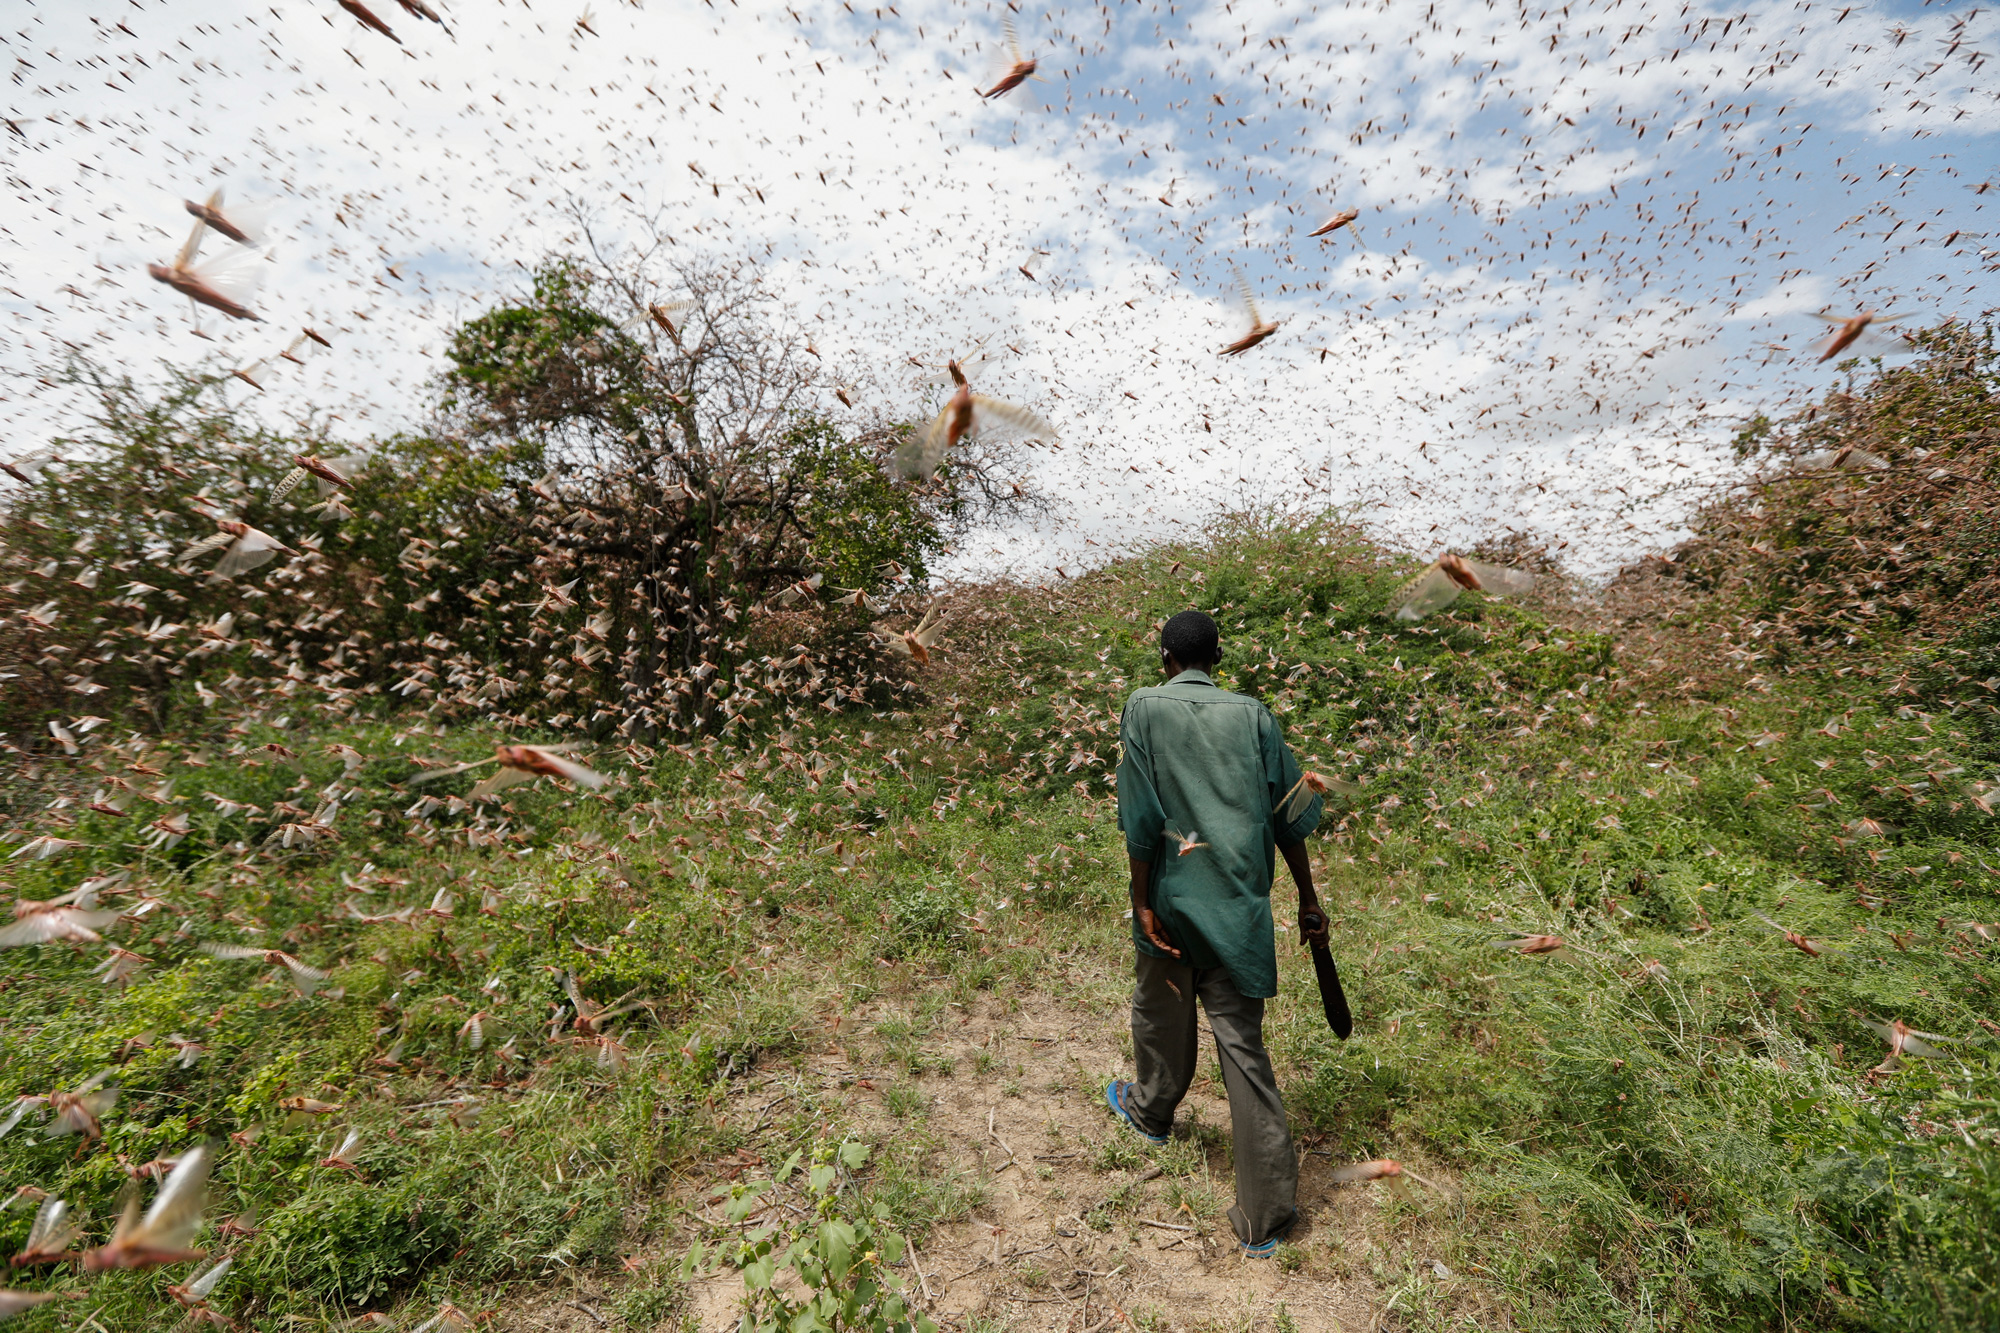 24 января: человек пробирается сквозь рой пустынной саранчи примерно в 200 километрах от Найроби, столицы Кении. Страна уже несколько недель переживает нашествие саранчи, поразившей более 70 тысяч земли в Сомали. Продовольственная и сельскохозяйственная организация Объединенных Наций (ФАО) назвала вызванный насекомыми кризис «наихудшей ситуацией за 25 лет». Также ФАО предупредила, что саранча создает «беспрецедентную угрозу» продовольственной безопасности в регионе.